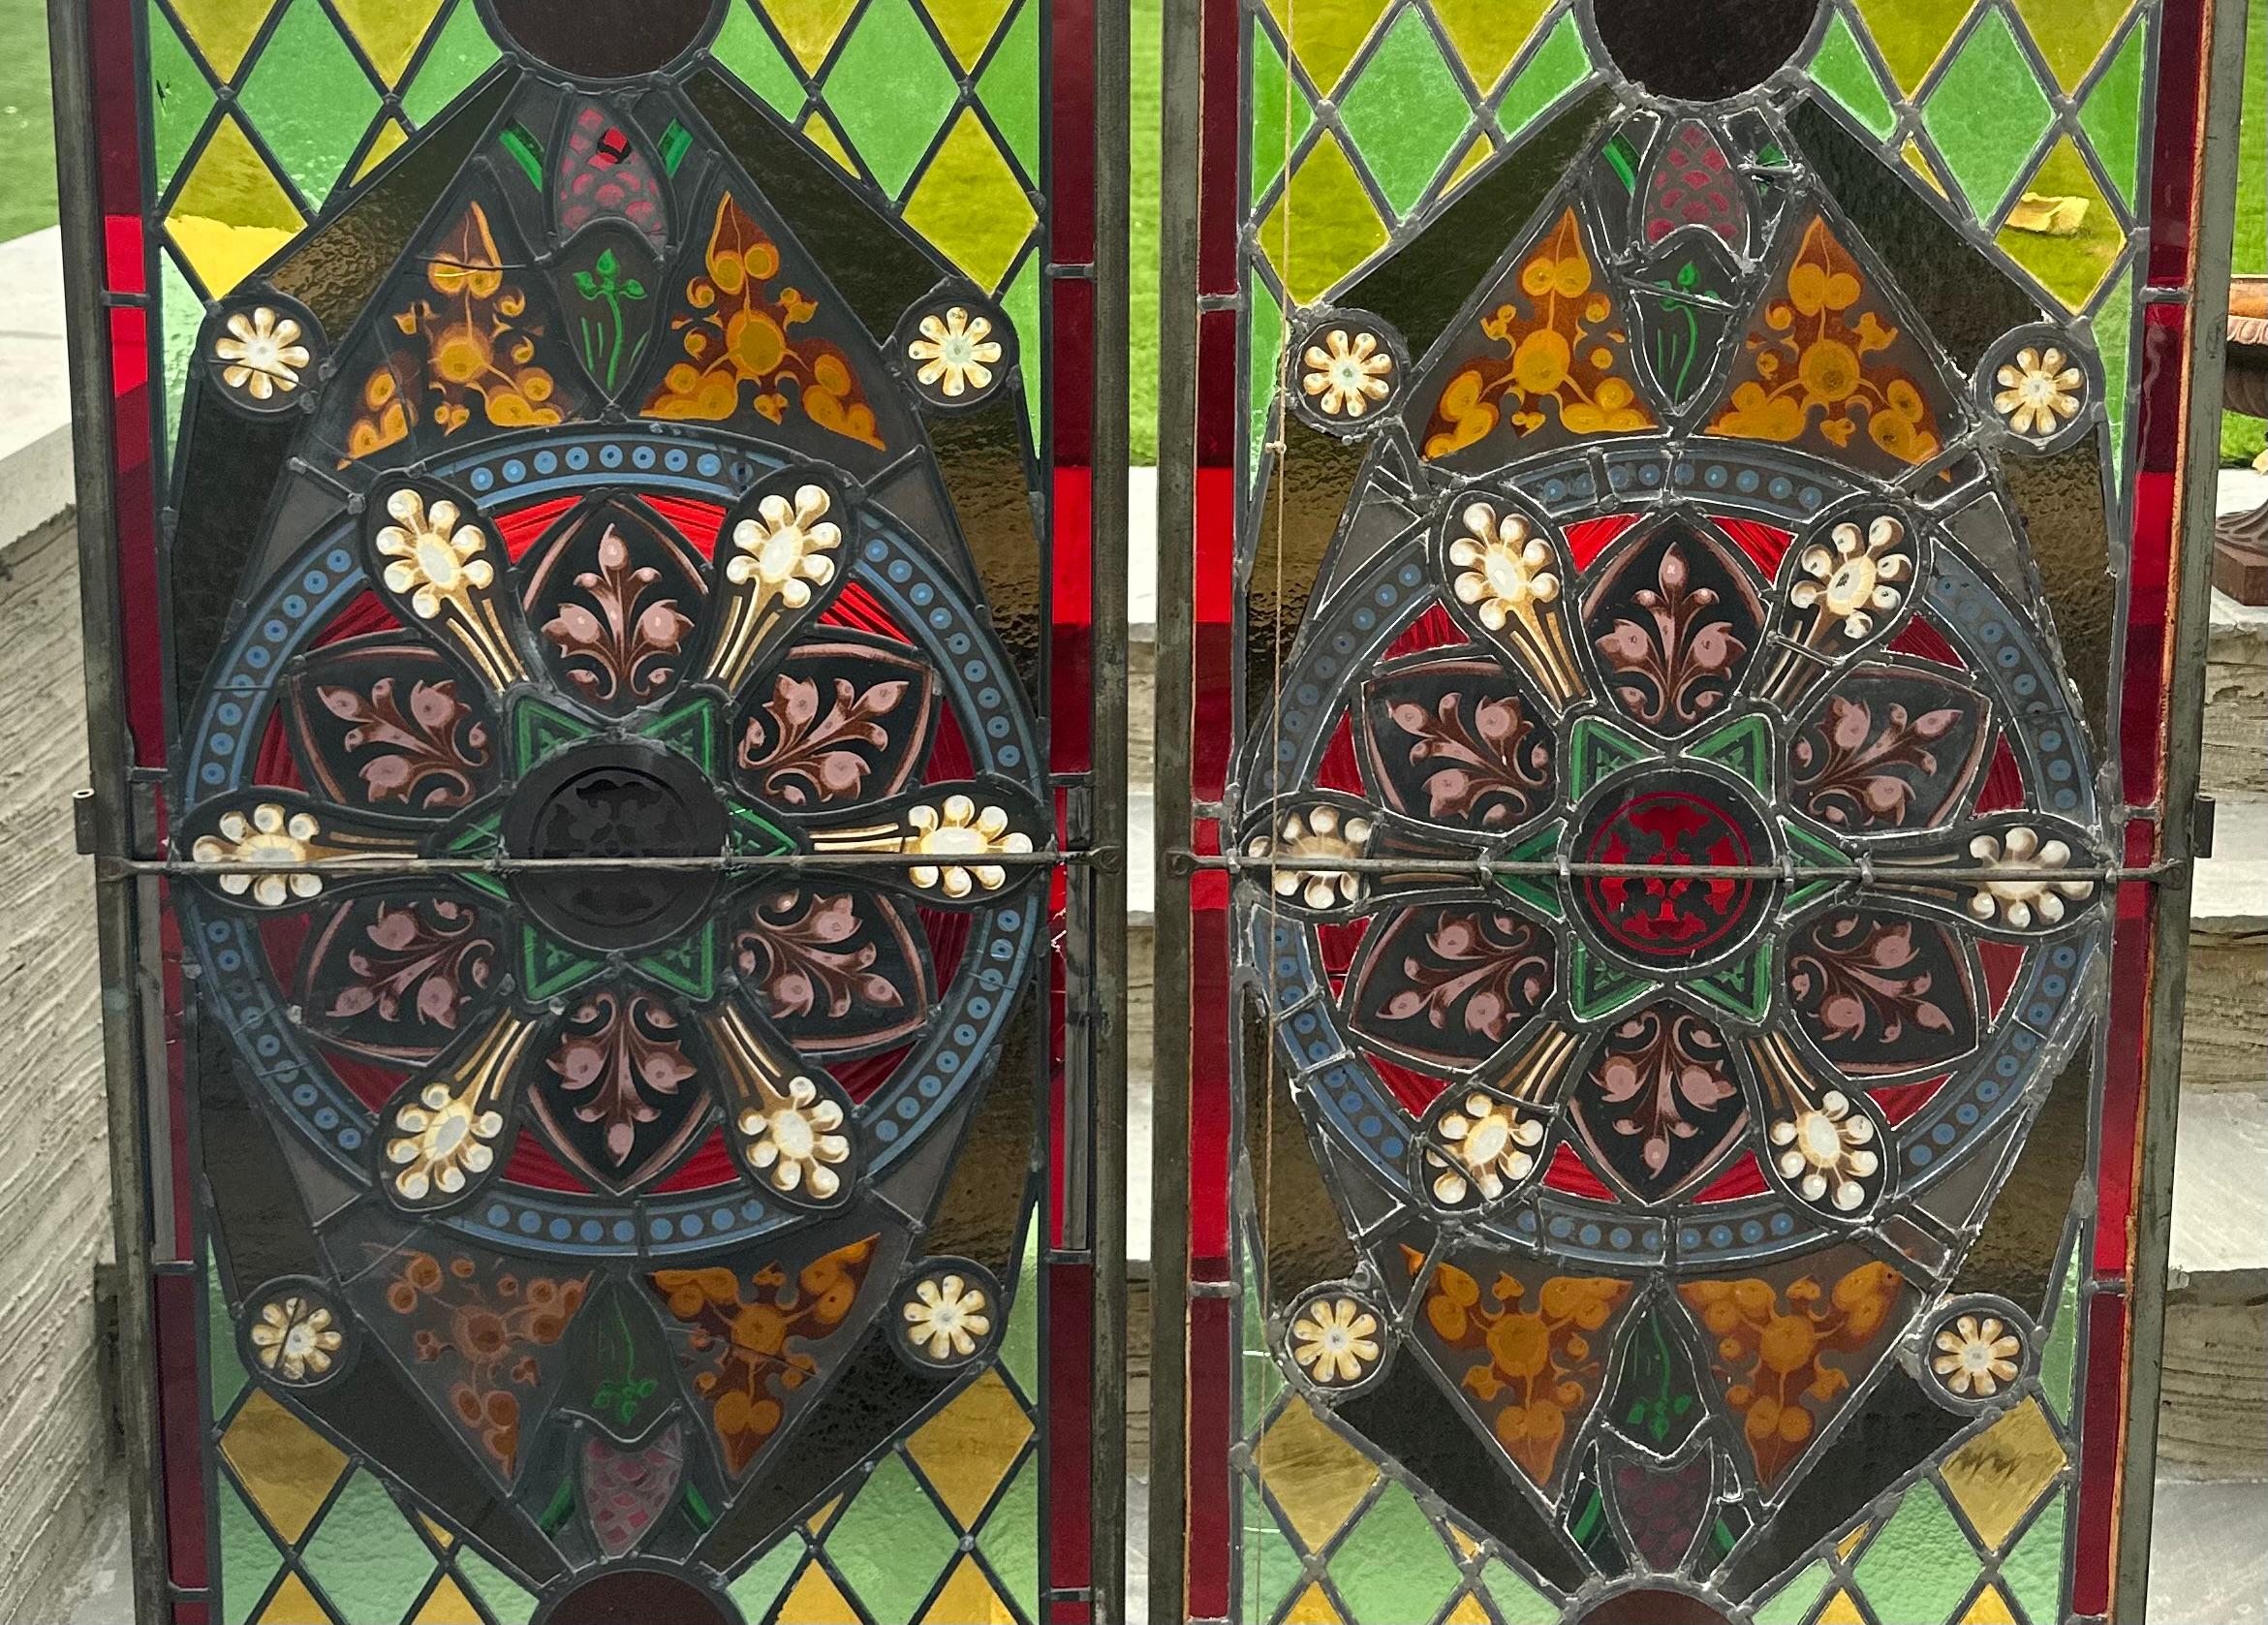 Une belle paire de portes en vitrail anglais, provenant d'une église anglaise, qui ont été transformées en portes dans les années 1920, avec des cadres en métal acrylique autour des panneaux. 
Un petit panneau s'est détaché de la porte latérale